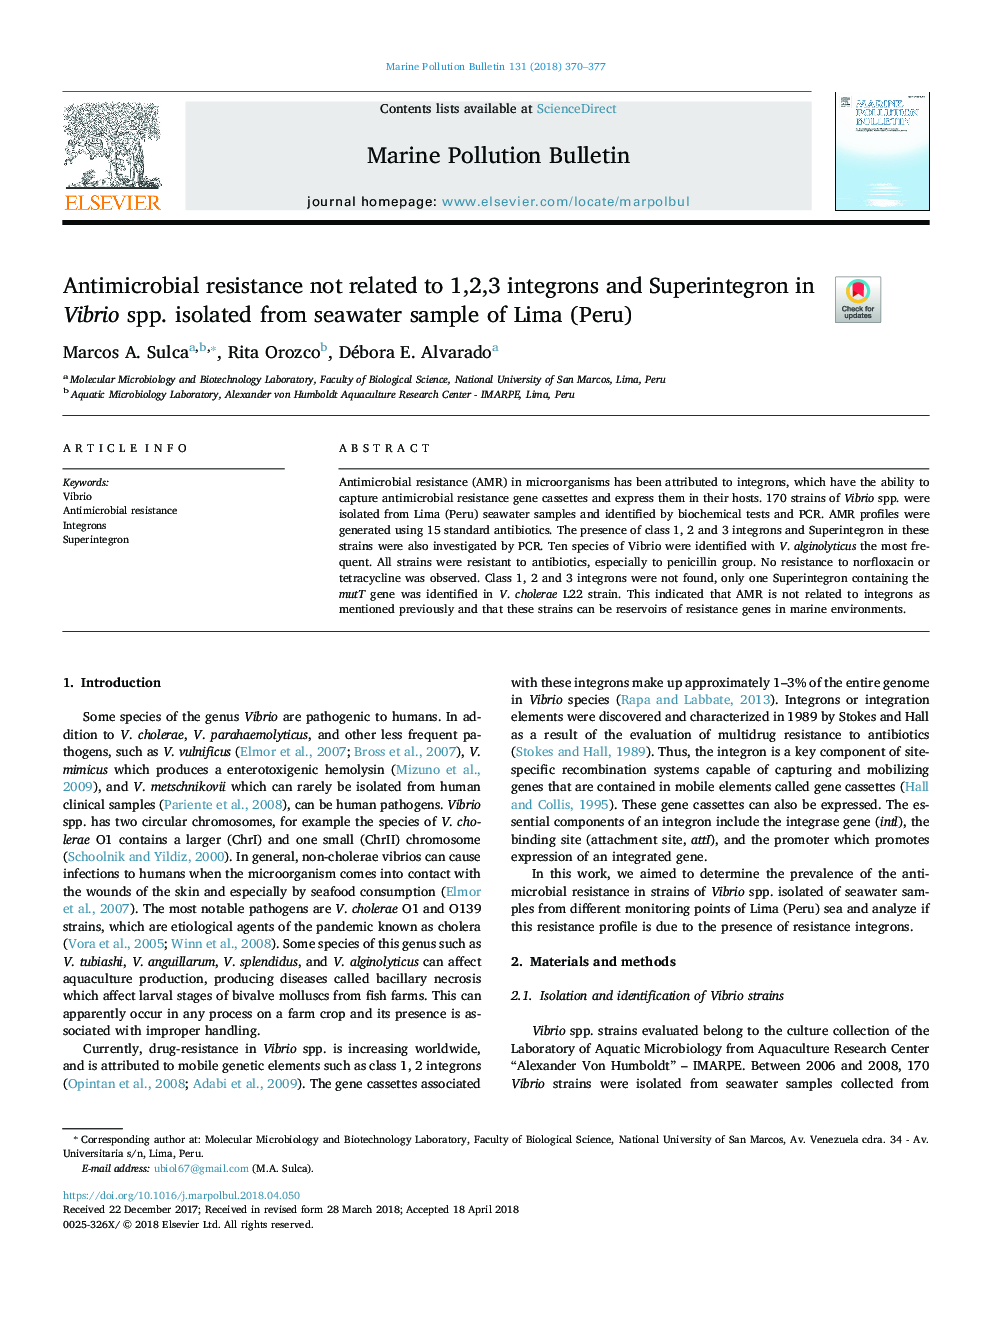 مقاومت ضد میکروبی به 1،2،3 جنونانس و سوپینینترون در ویبریو اسپور جدا شده از نمونه آب دریا لیما (پرو) 